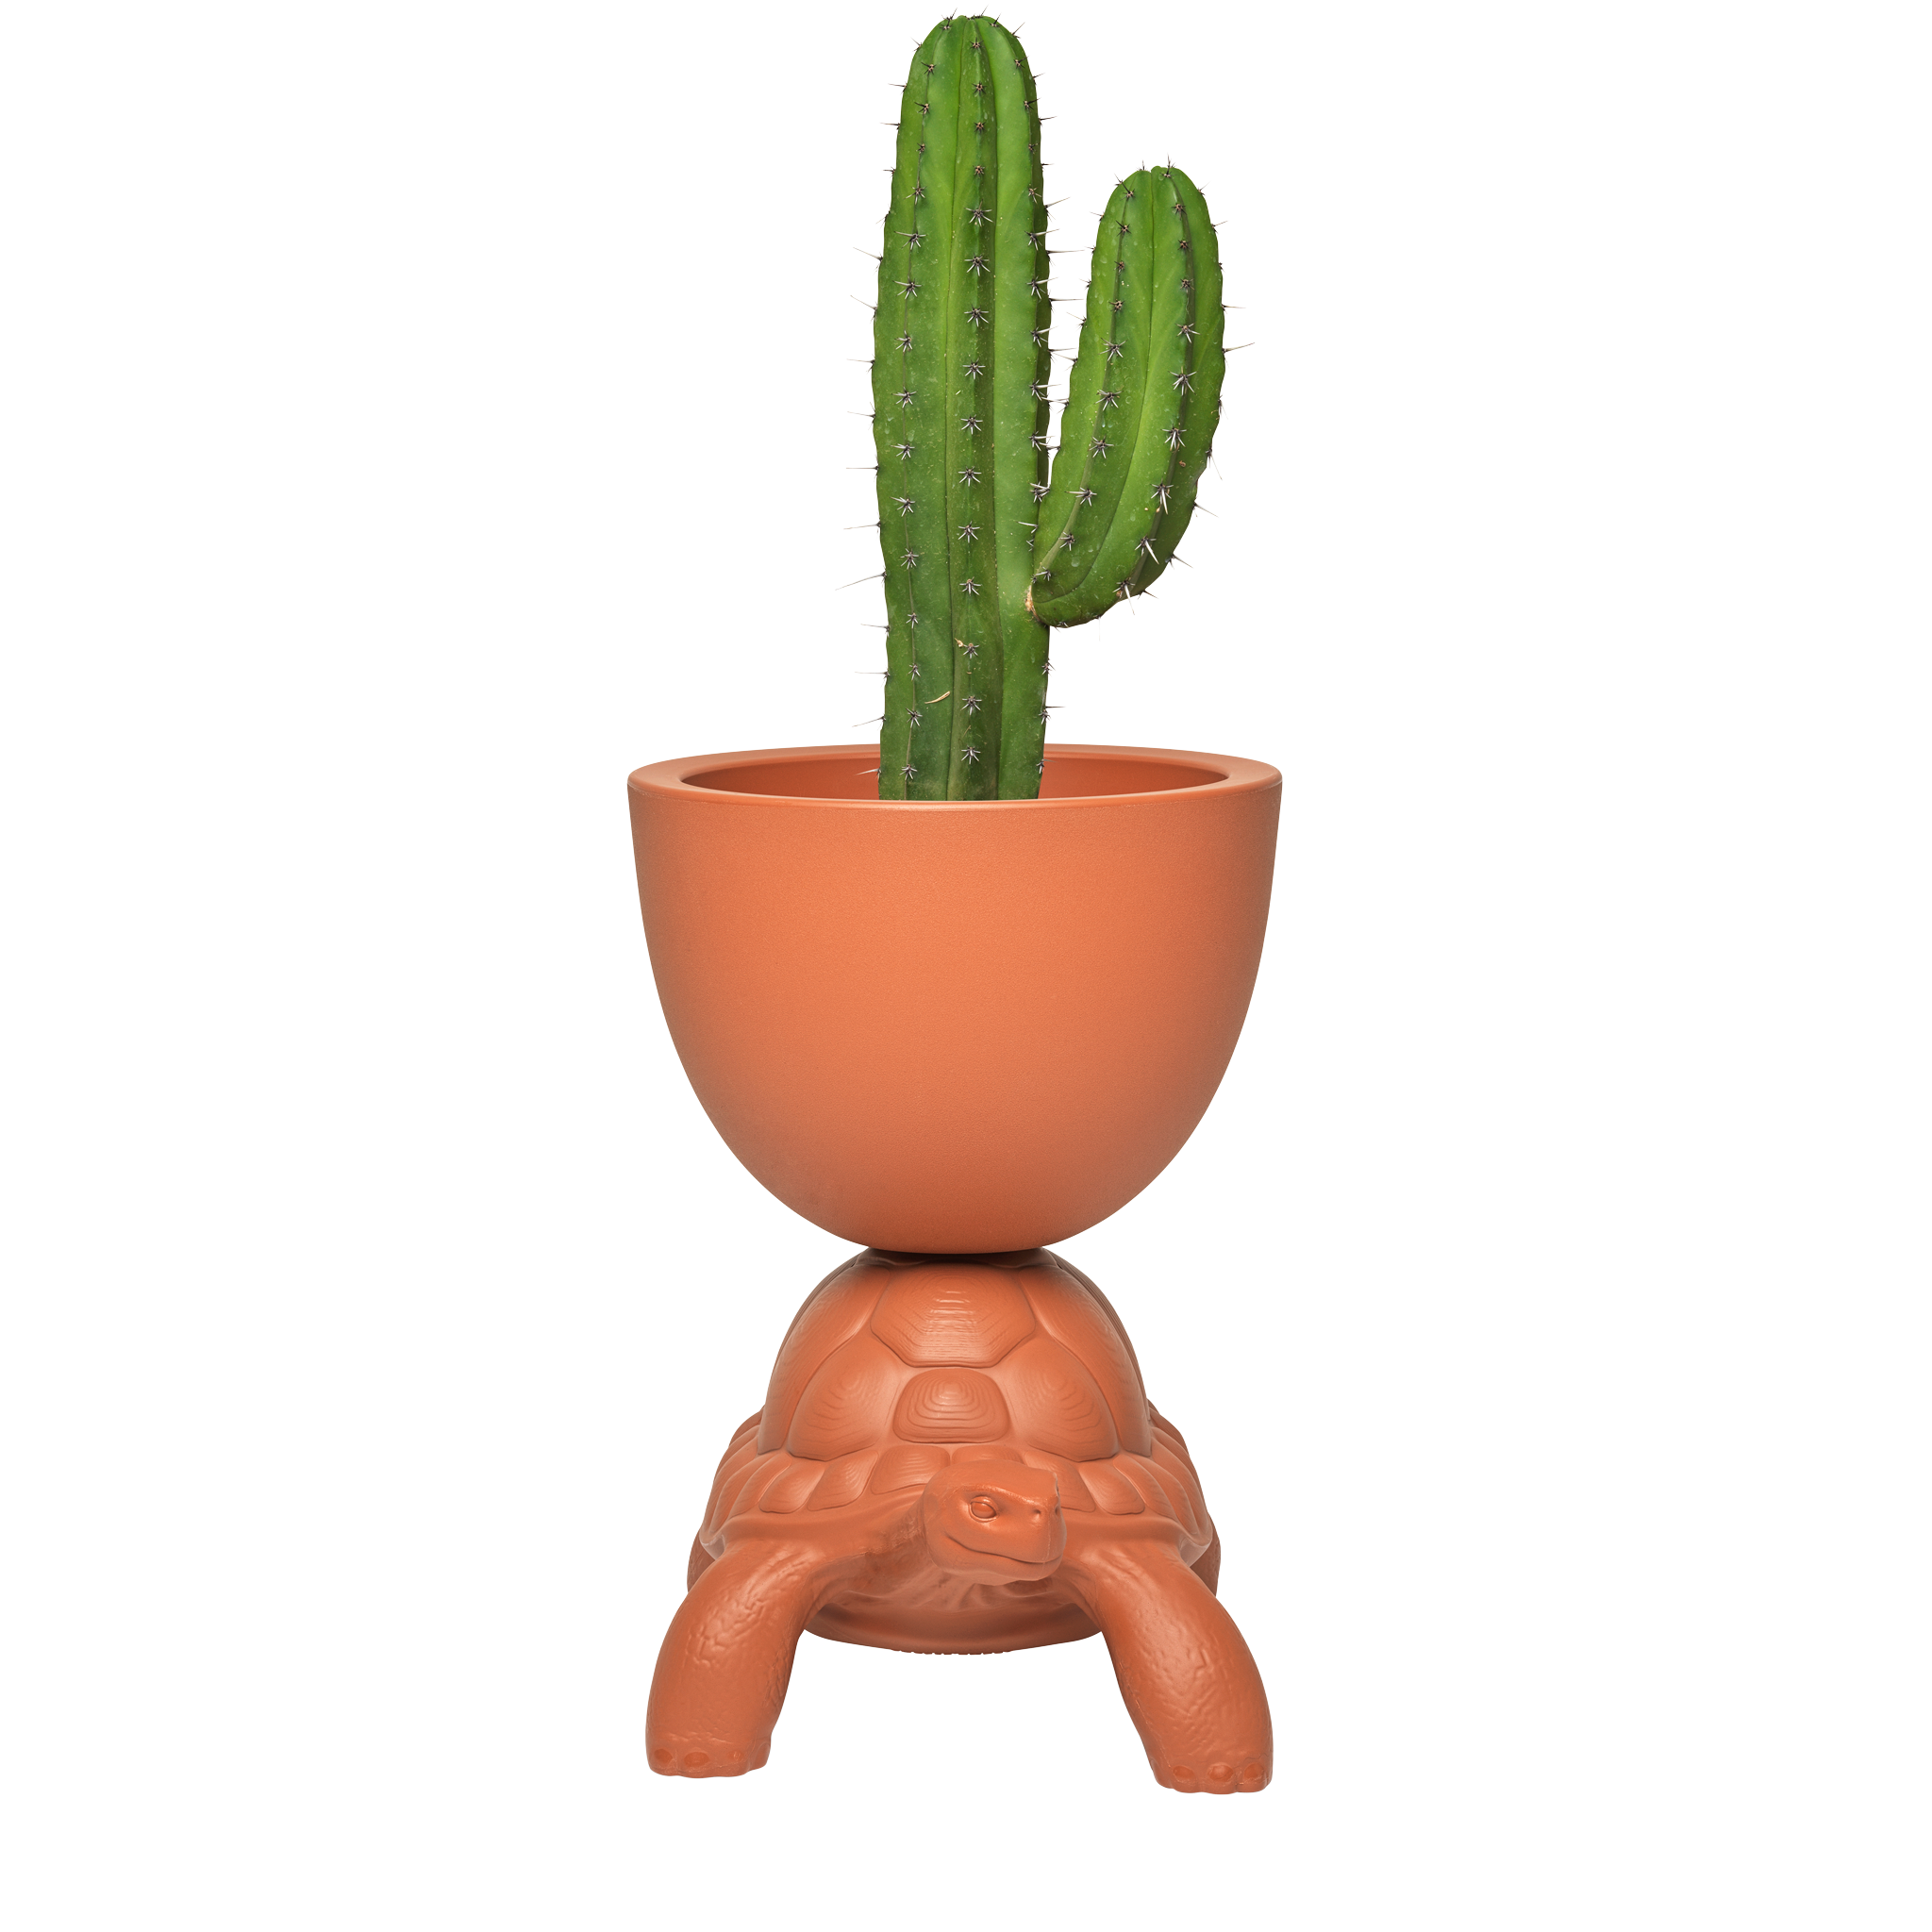 TURTLE CARRY terracotta flowerpot, QeeBoo, Eye on Design